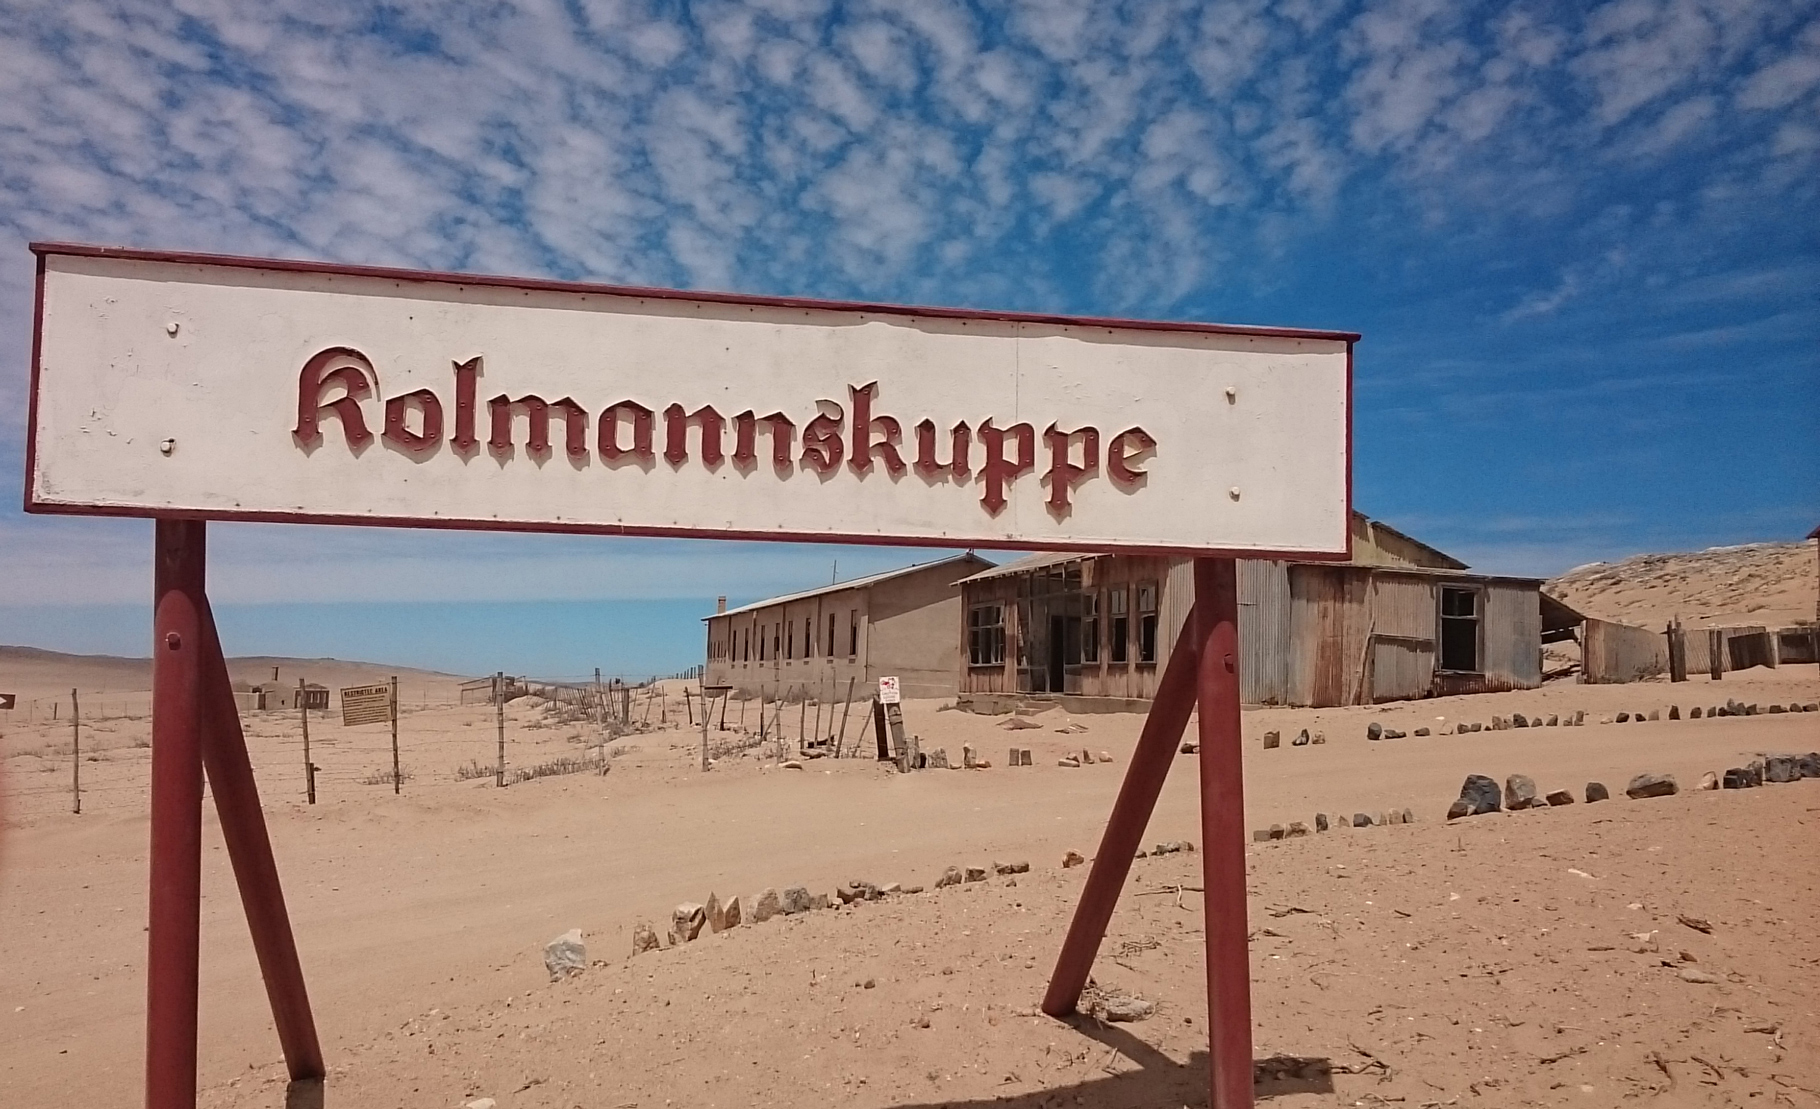 Namibie_Kolmanskop_01